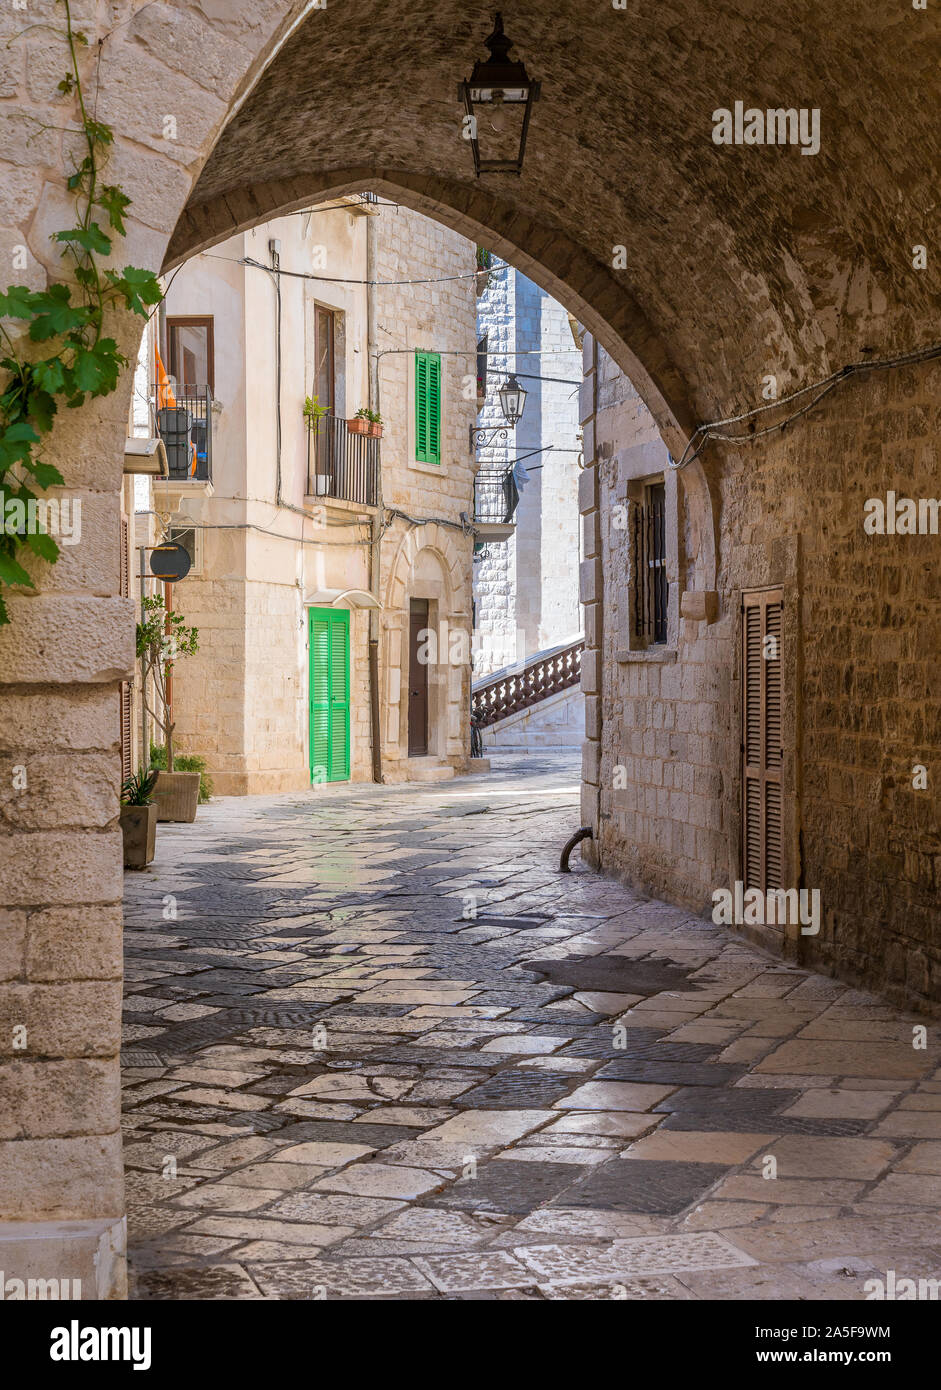 Giovinazzo, cittadina in provincia di Bari, Puglia), il sud dell'Italia. Foto Stock